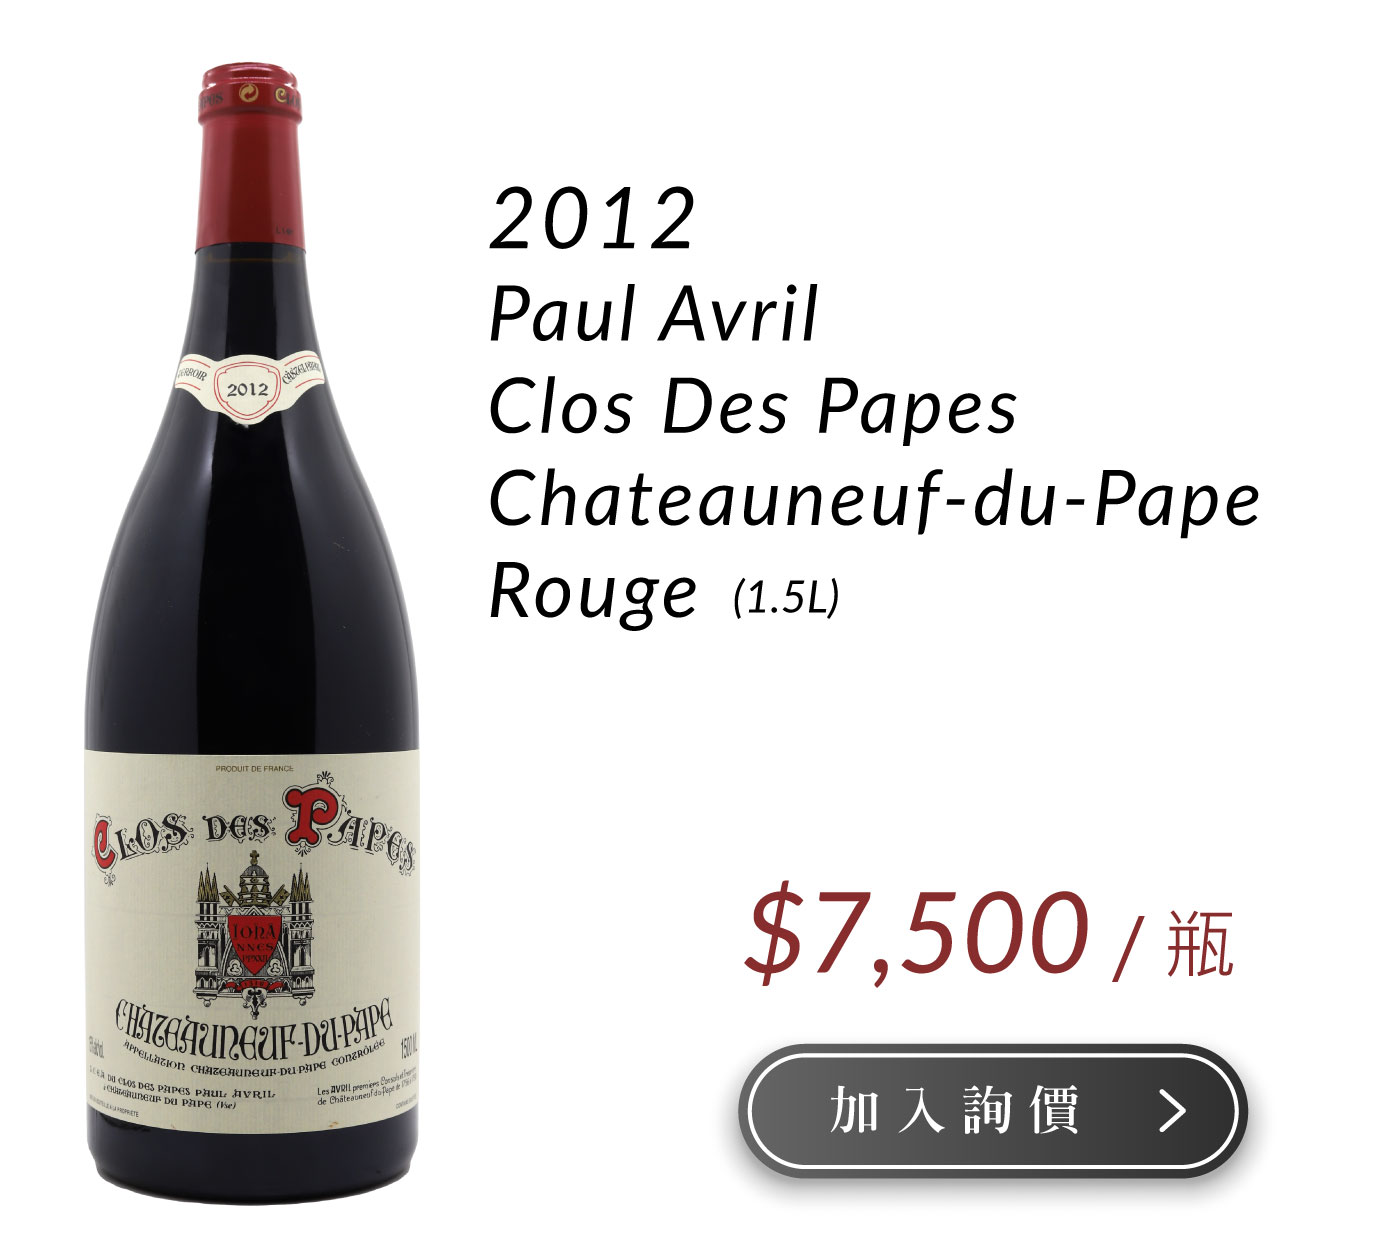 2012 Paul Avril Clos Des Papes Chateauneuf-du-Pape Rouge MG